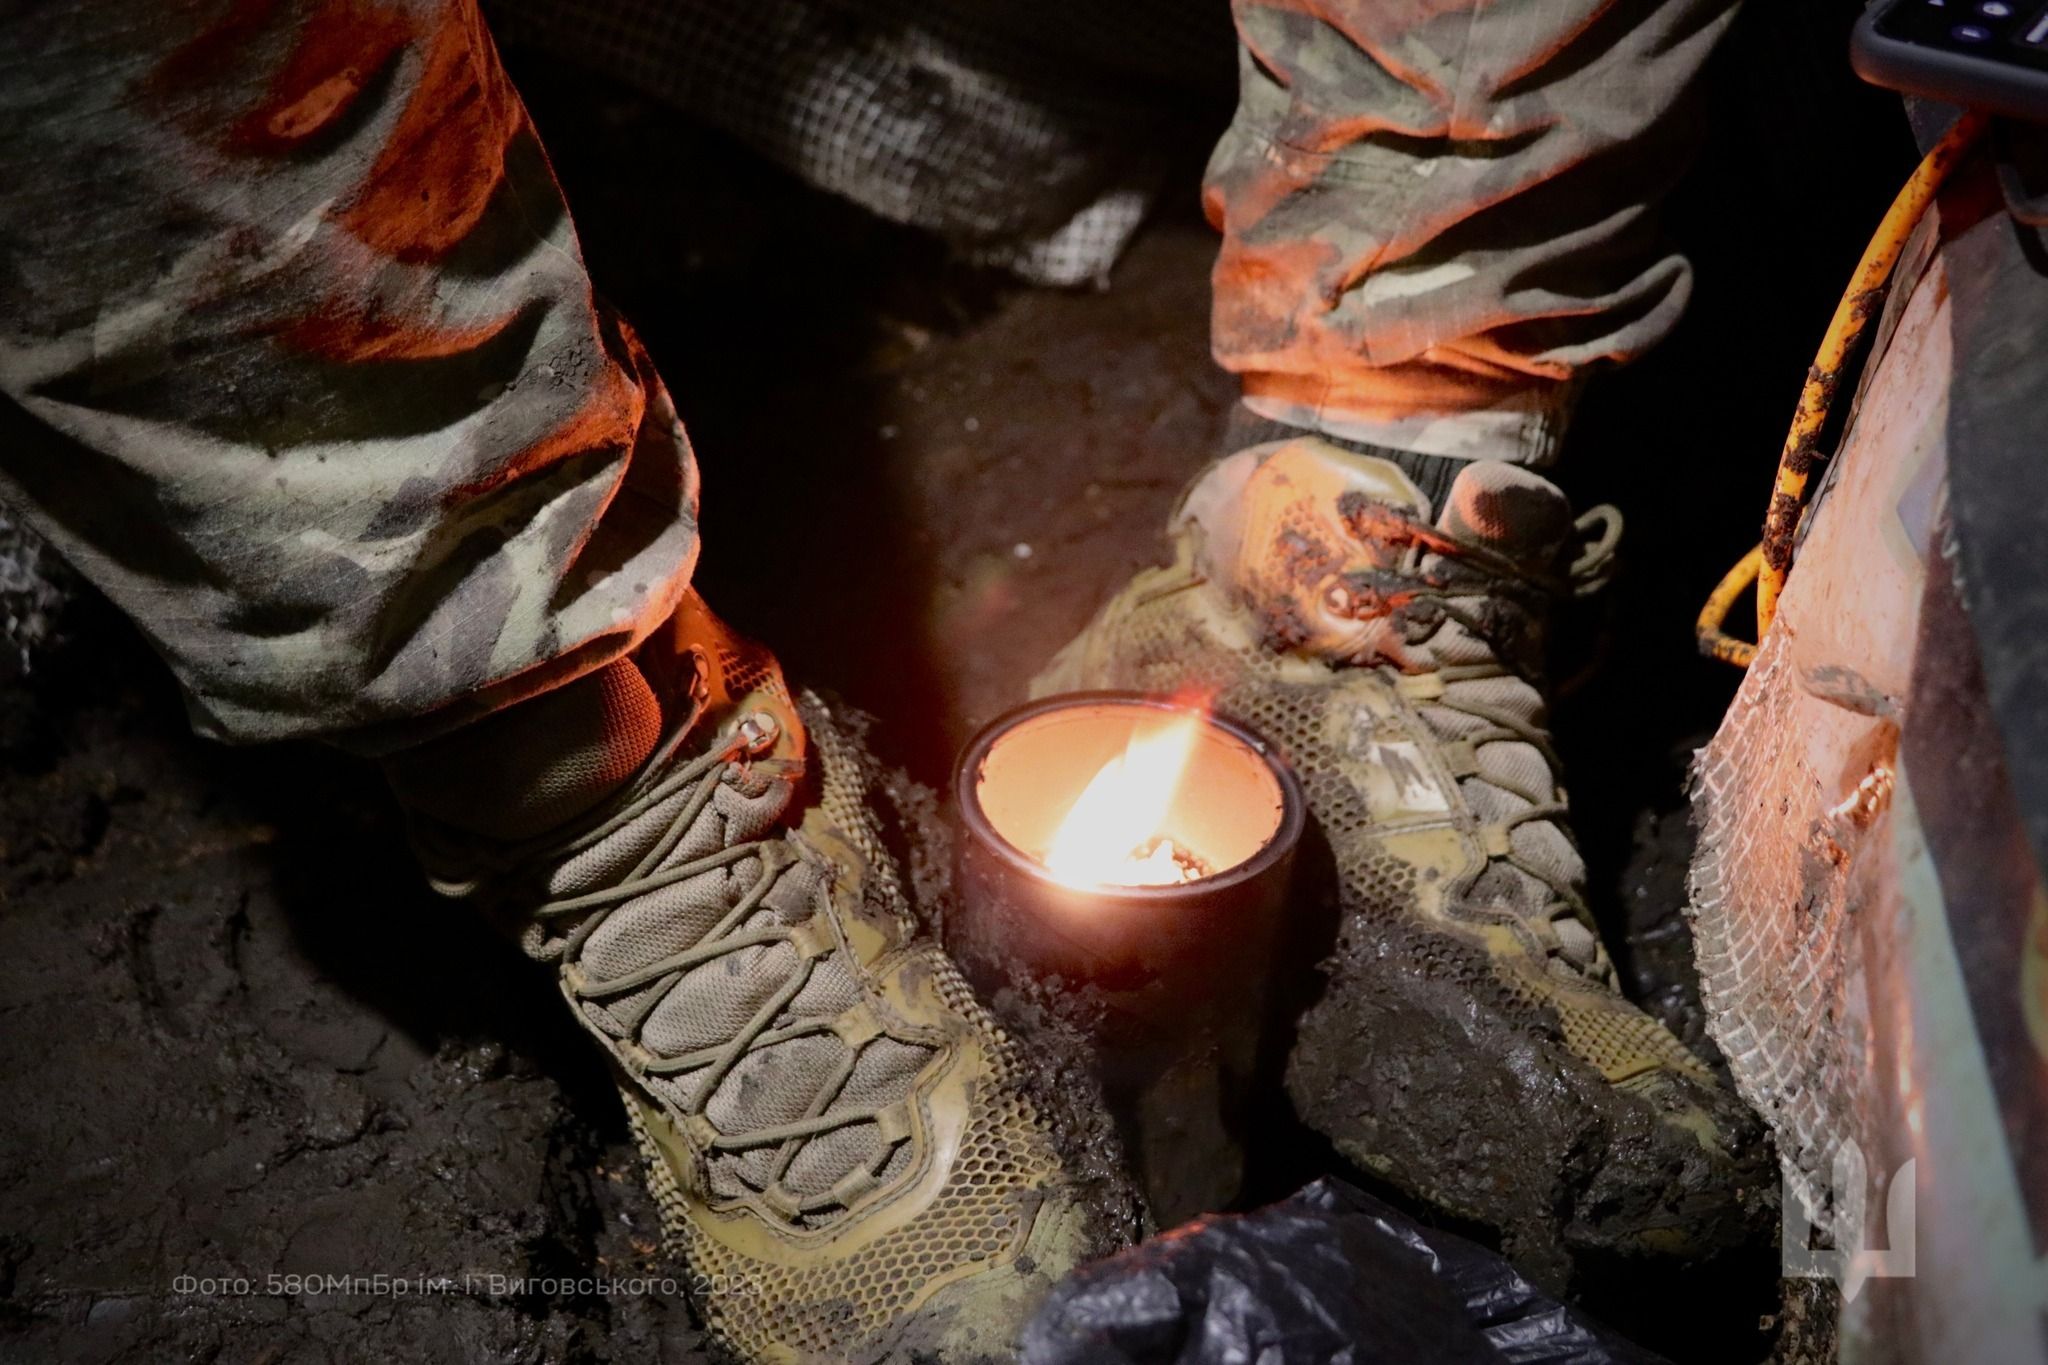 Захисник України гріє ноги окопною свічкою.